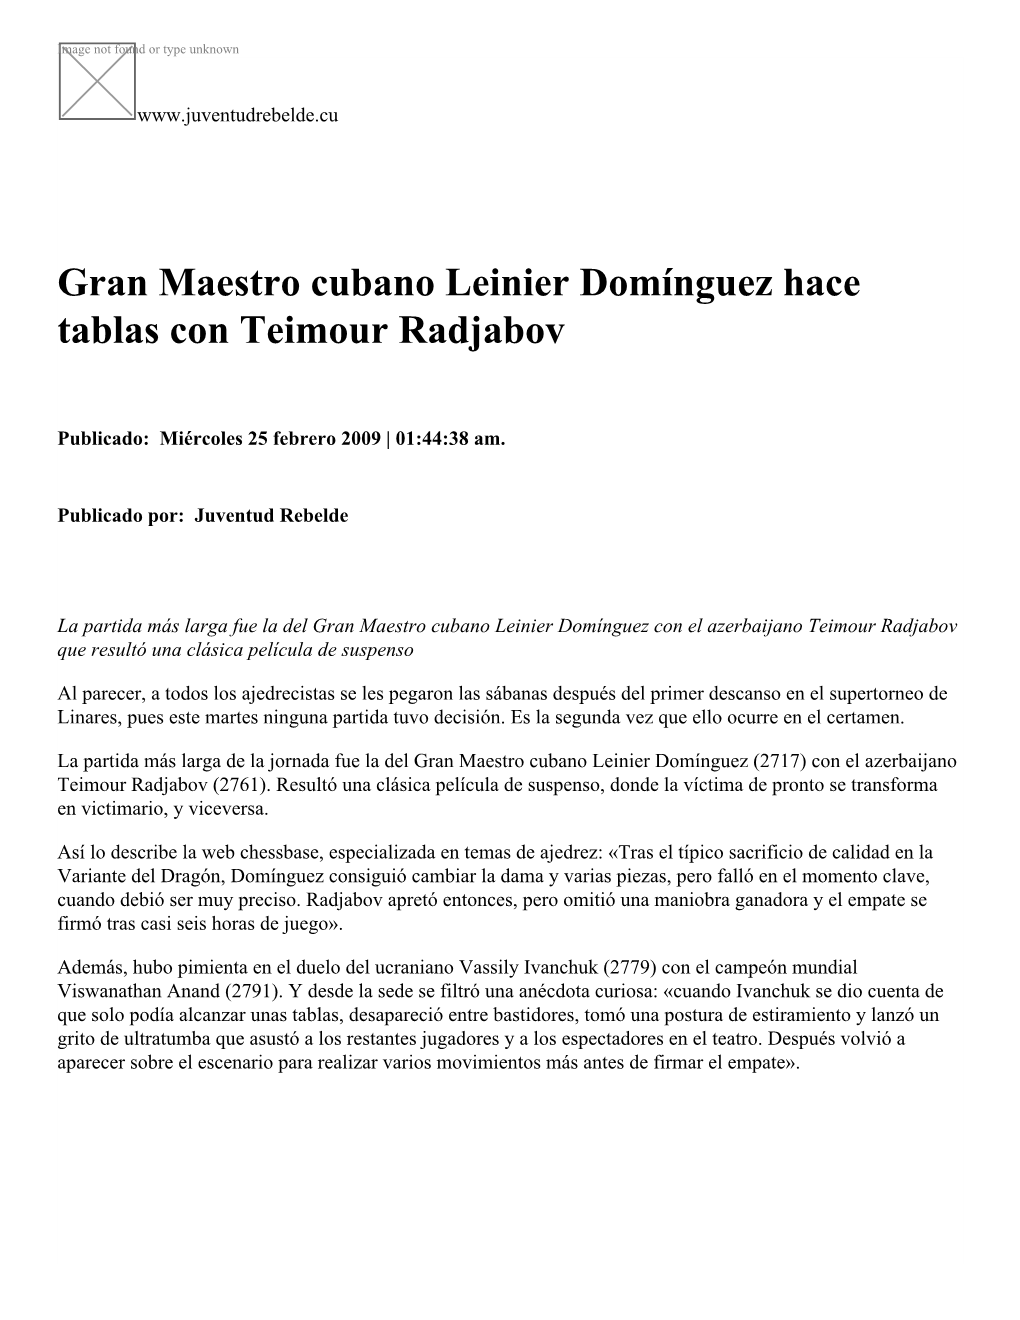 Gran Maestro Cubano Leinier Domínguez Hace Tablas Con Teimour Radjabov